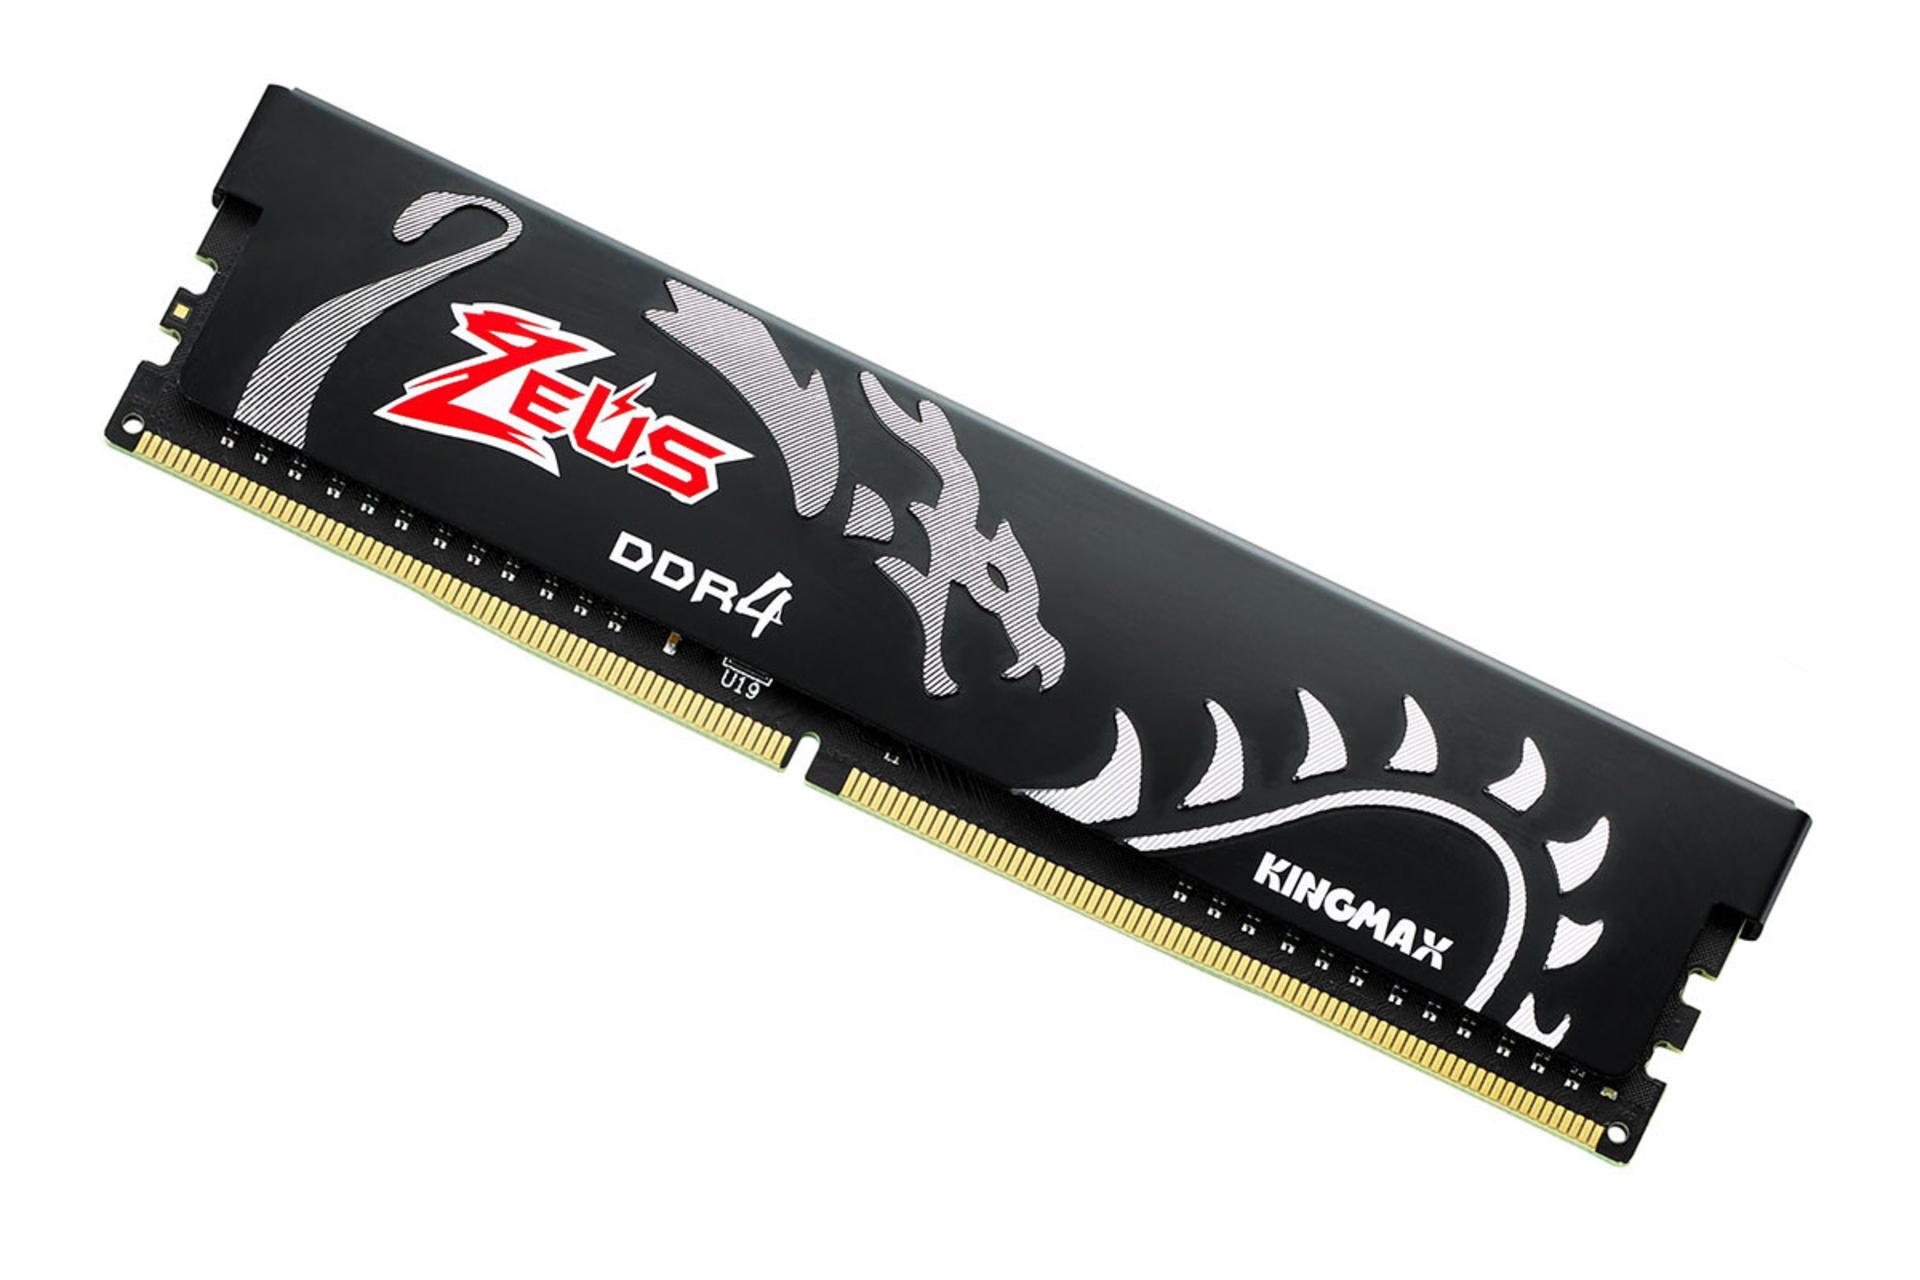 نمای کنار رم کینگ مکس Zeus Dragon ظرفیت 8 گیگابایت از نوع DDR4-3000